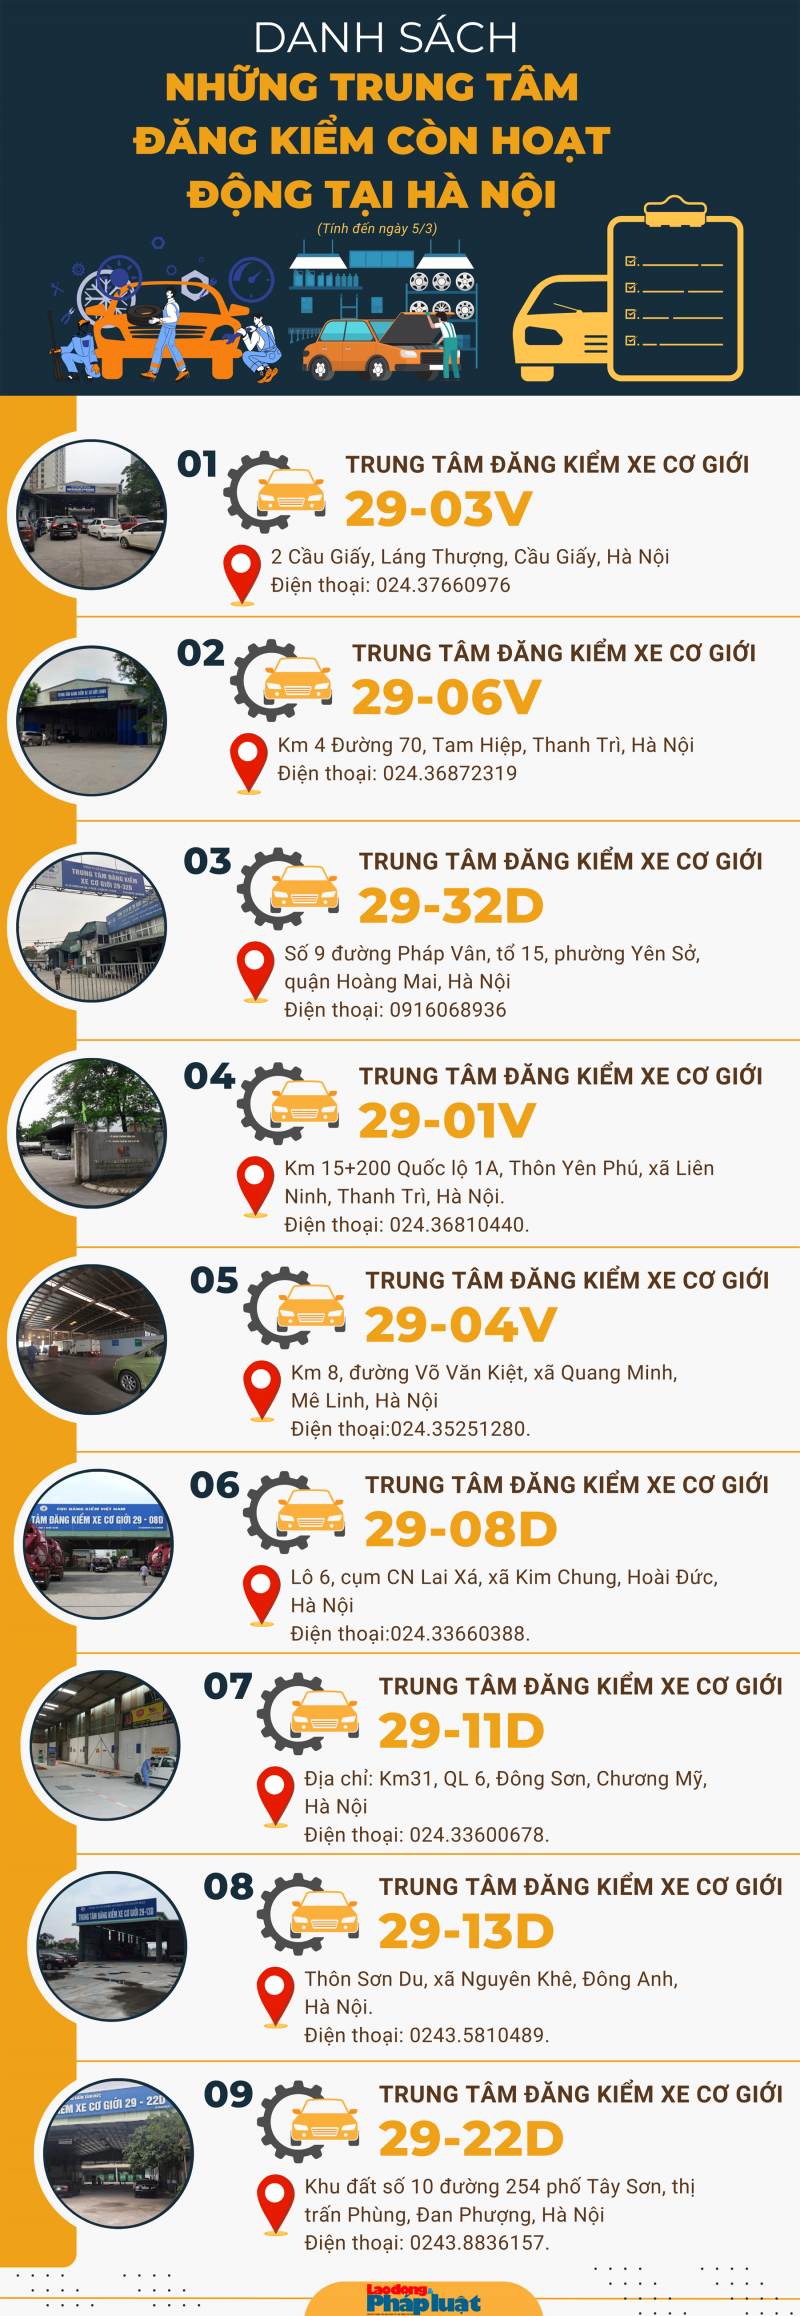 Danh sách những trung tâm đăng kiểm còn hoạt động tại Hà Nội